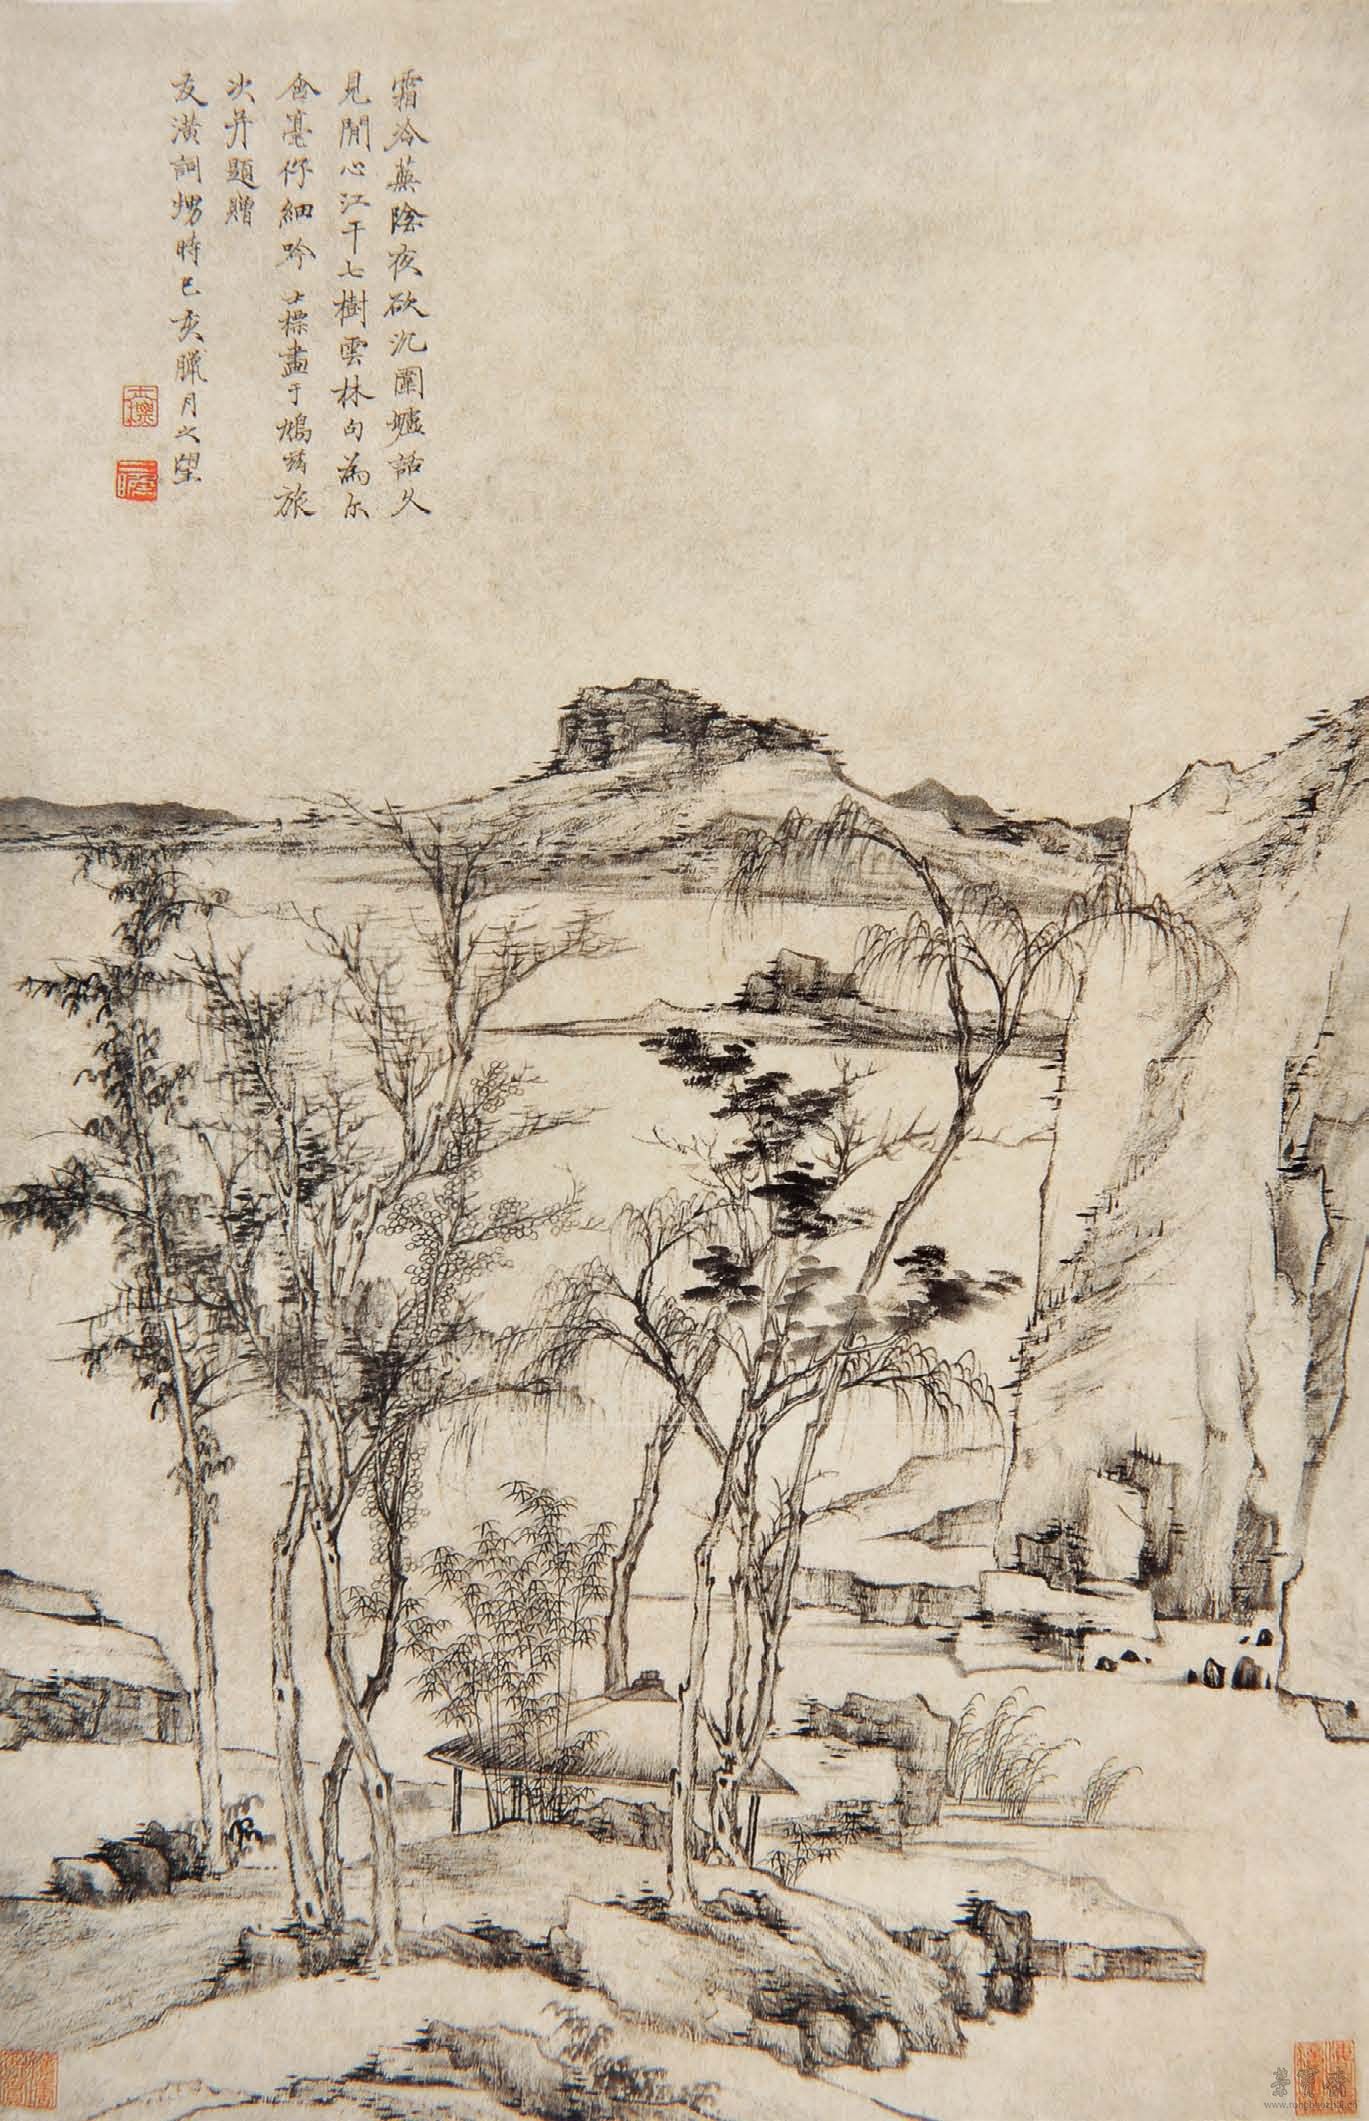 清 查士标 江干七树图 51.9cm×71.6cm 1659 上海博物馆藏